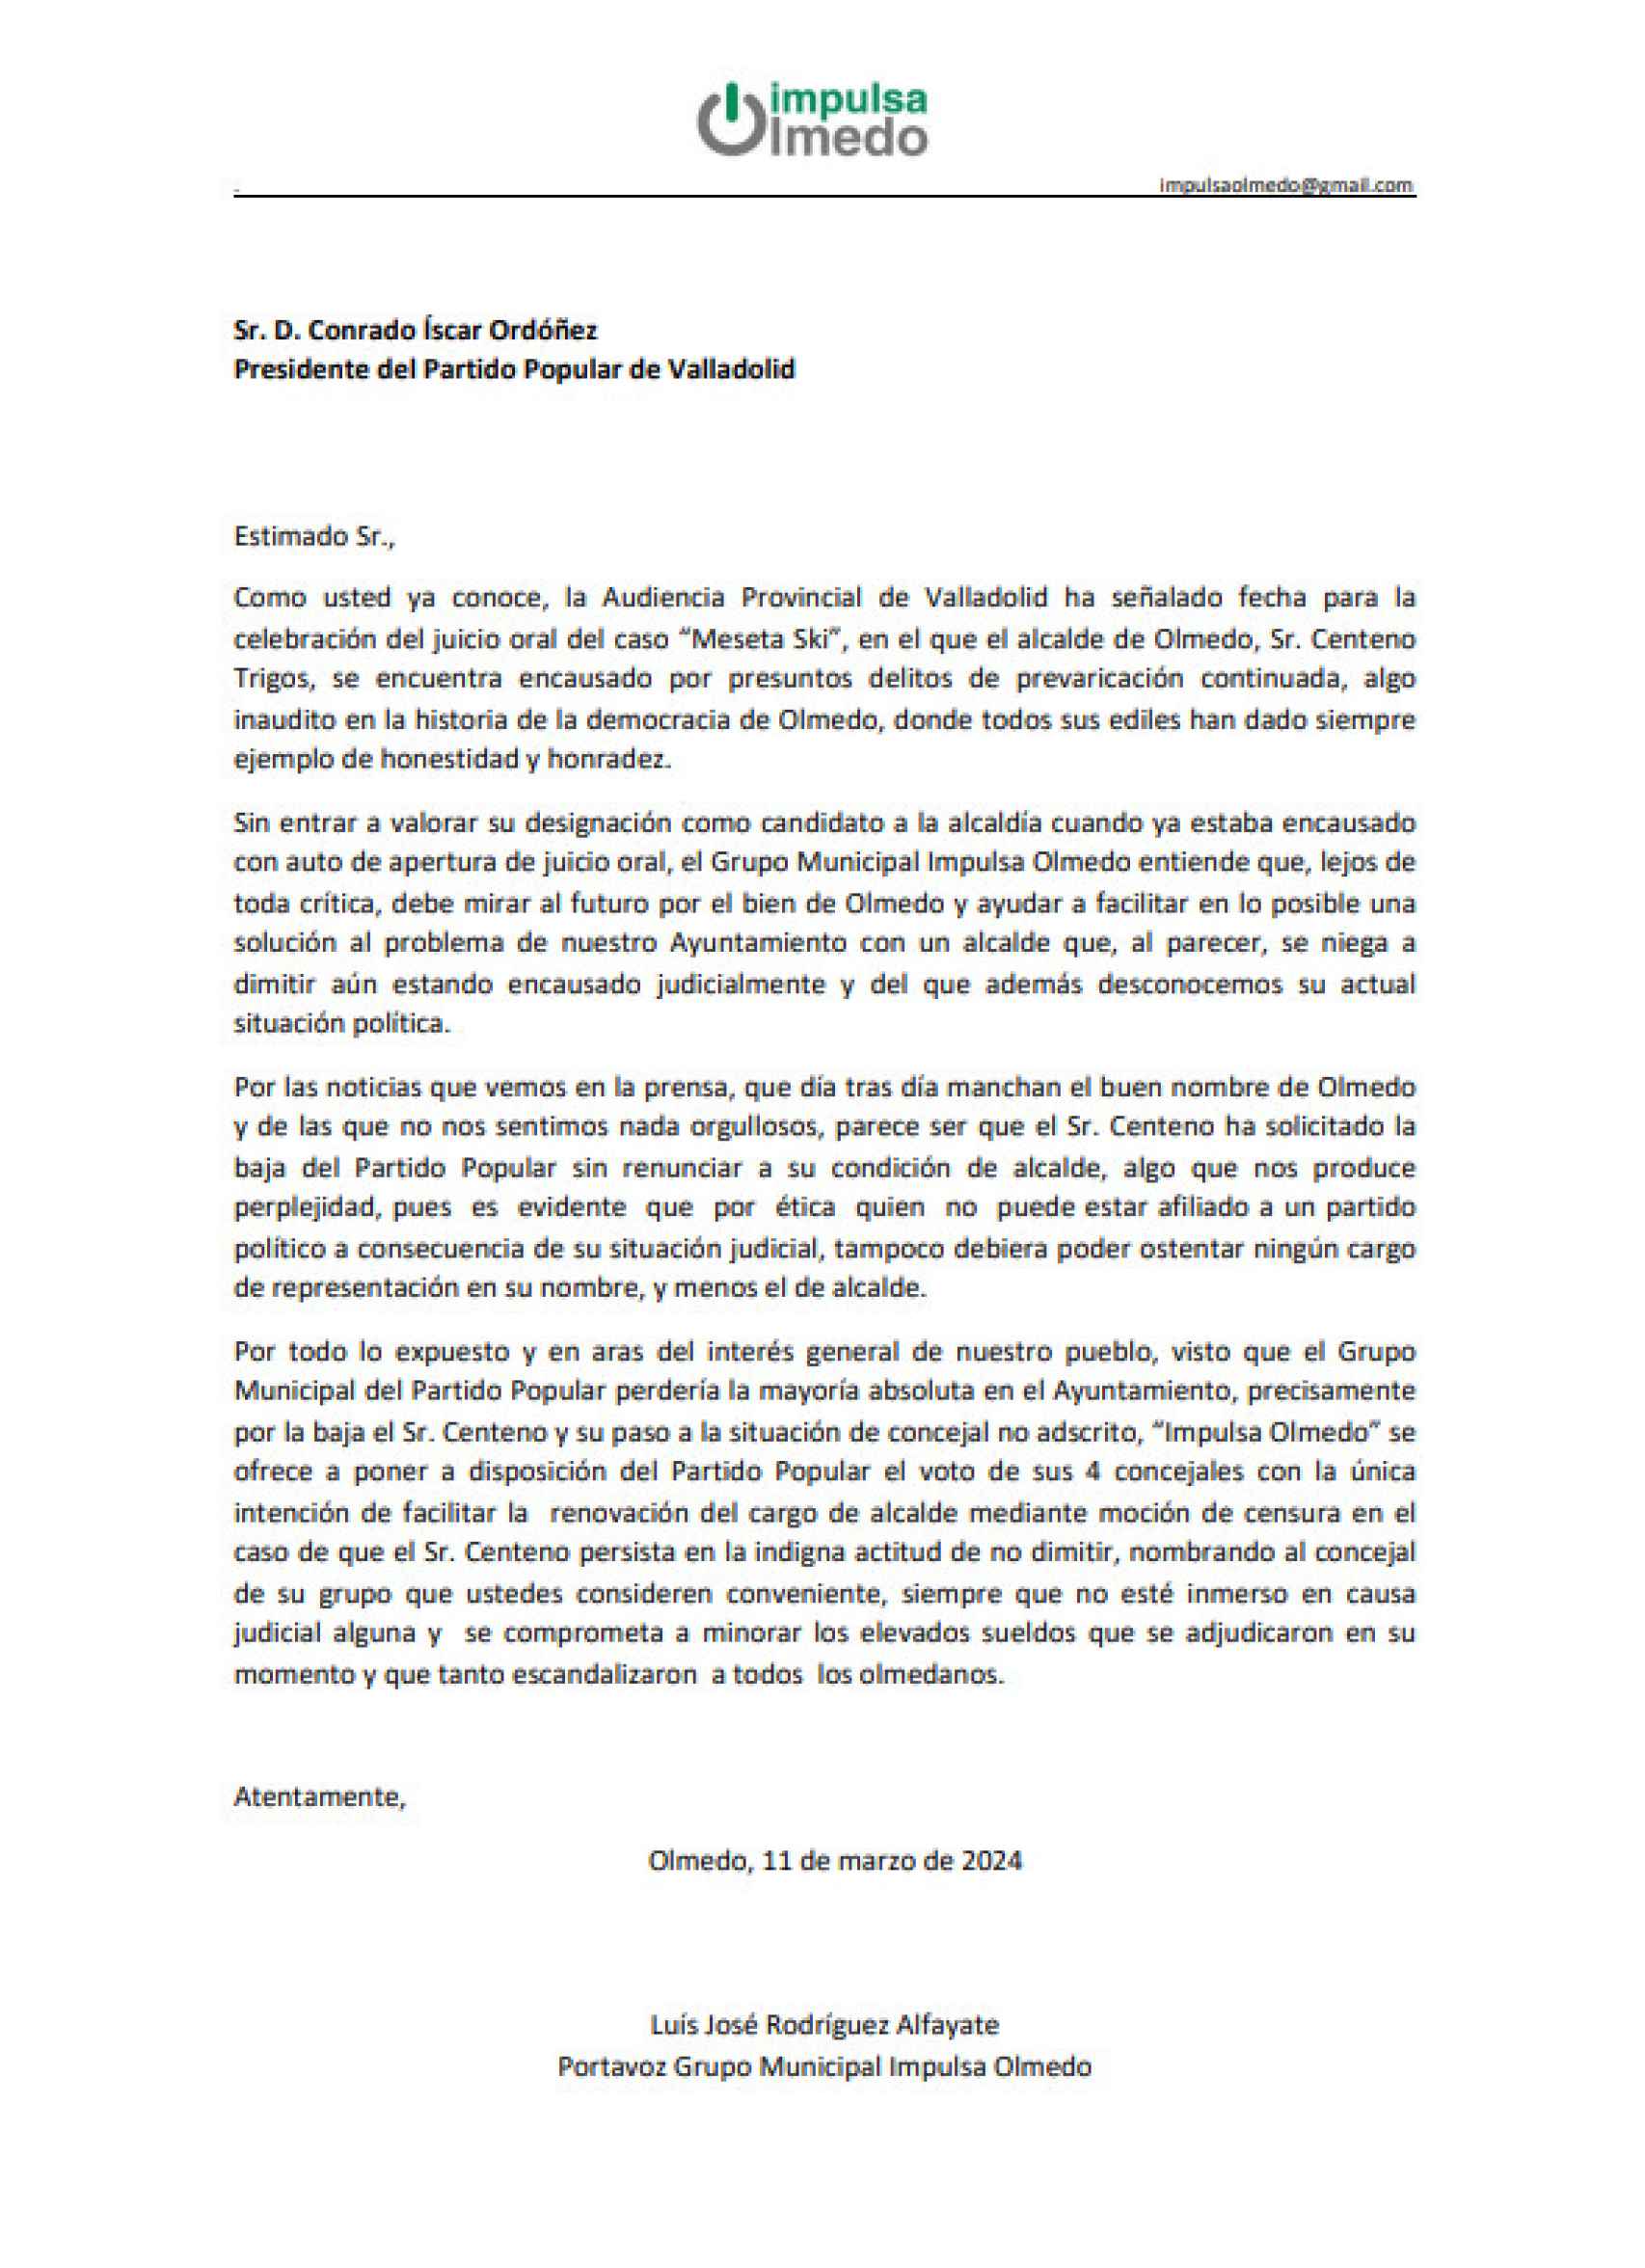 Carta de Impulsa Olmedo al presidente provincial del PP de Valladolid, Conrado Íscar